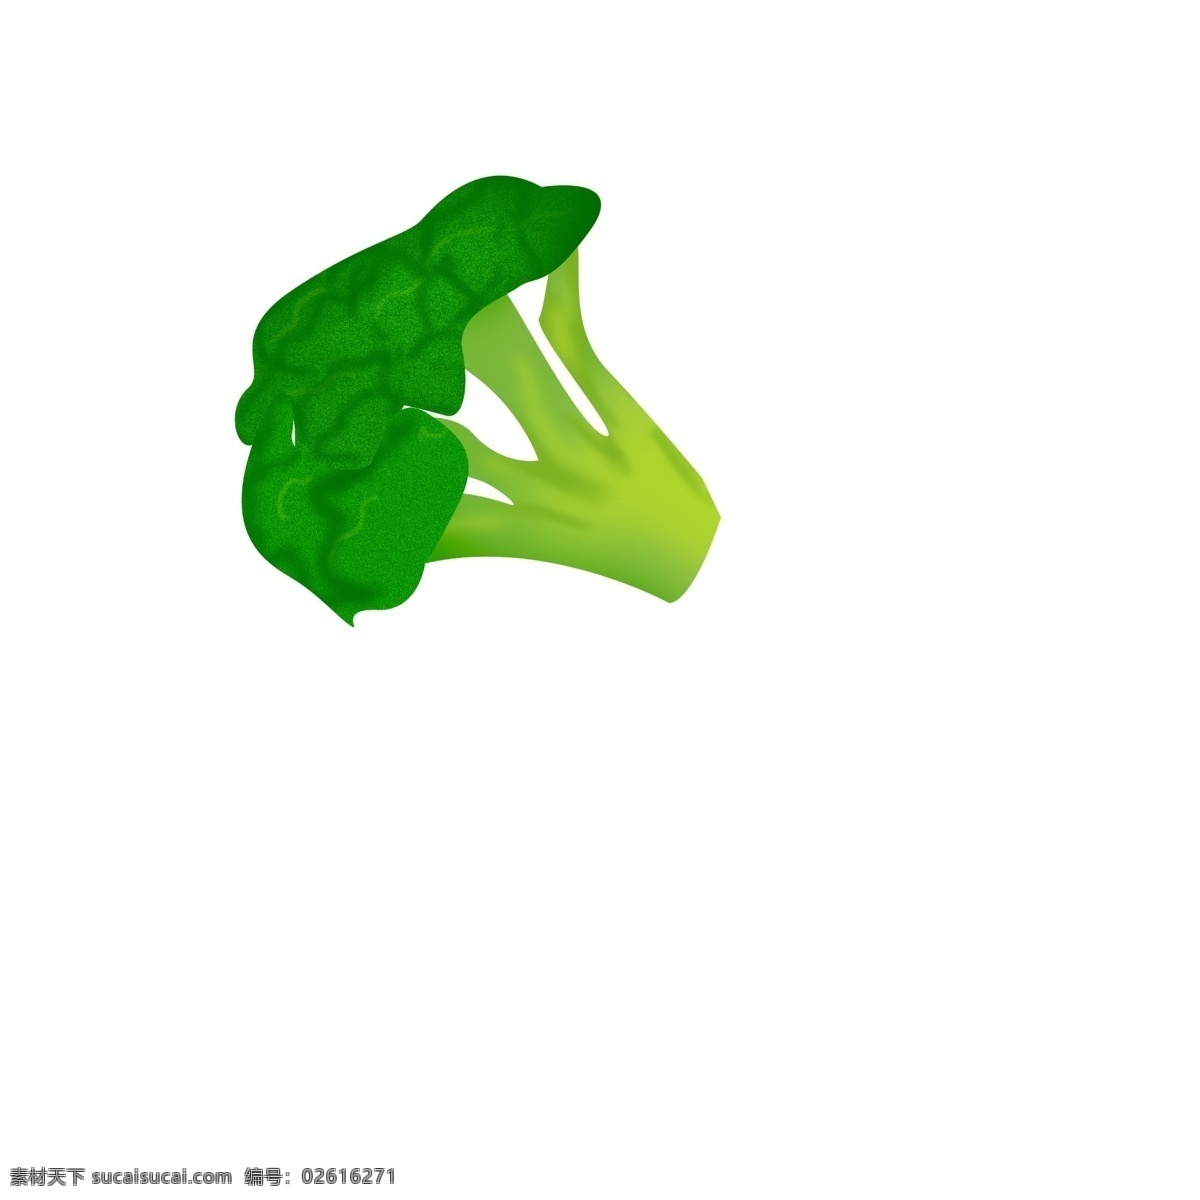 手绘 蔬菜 花菜 插画 绿色的花菜 新鲜的蔬菜 卡通插画 手绘蔬菜插画 有机的菜花 有机的蔬菜